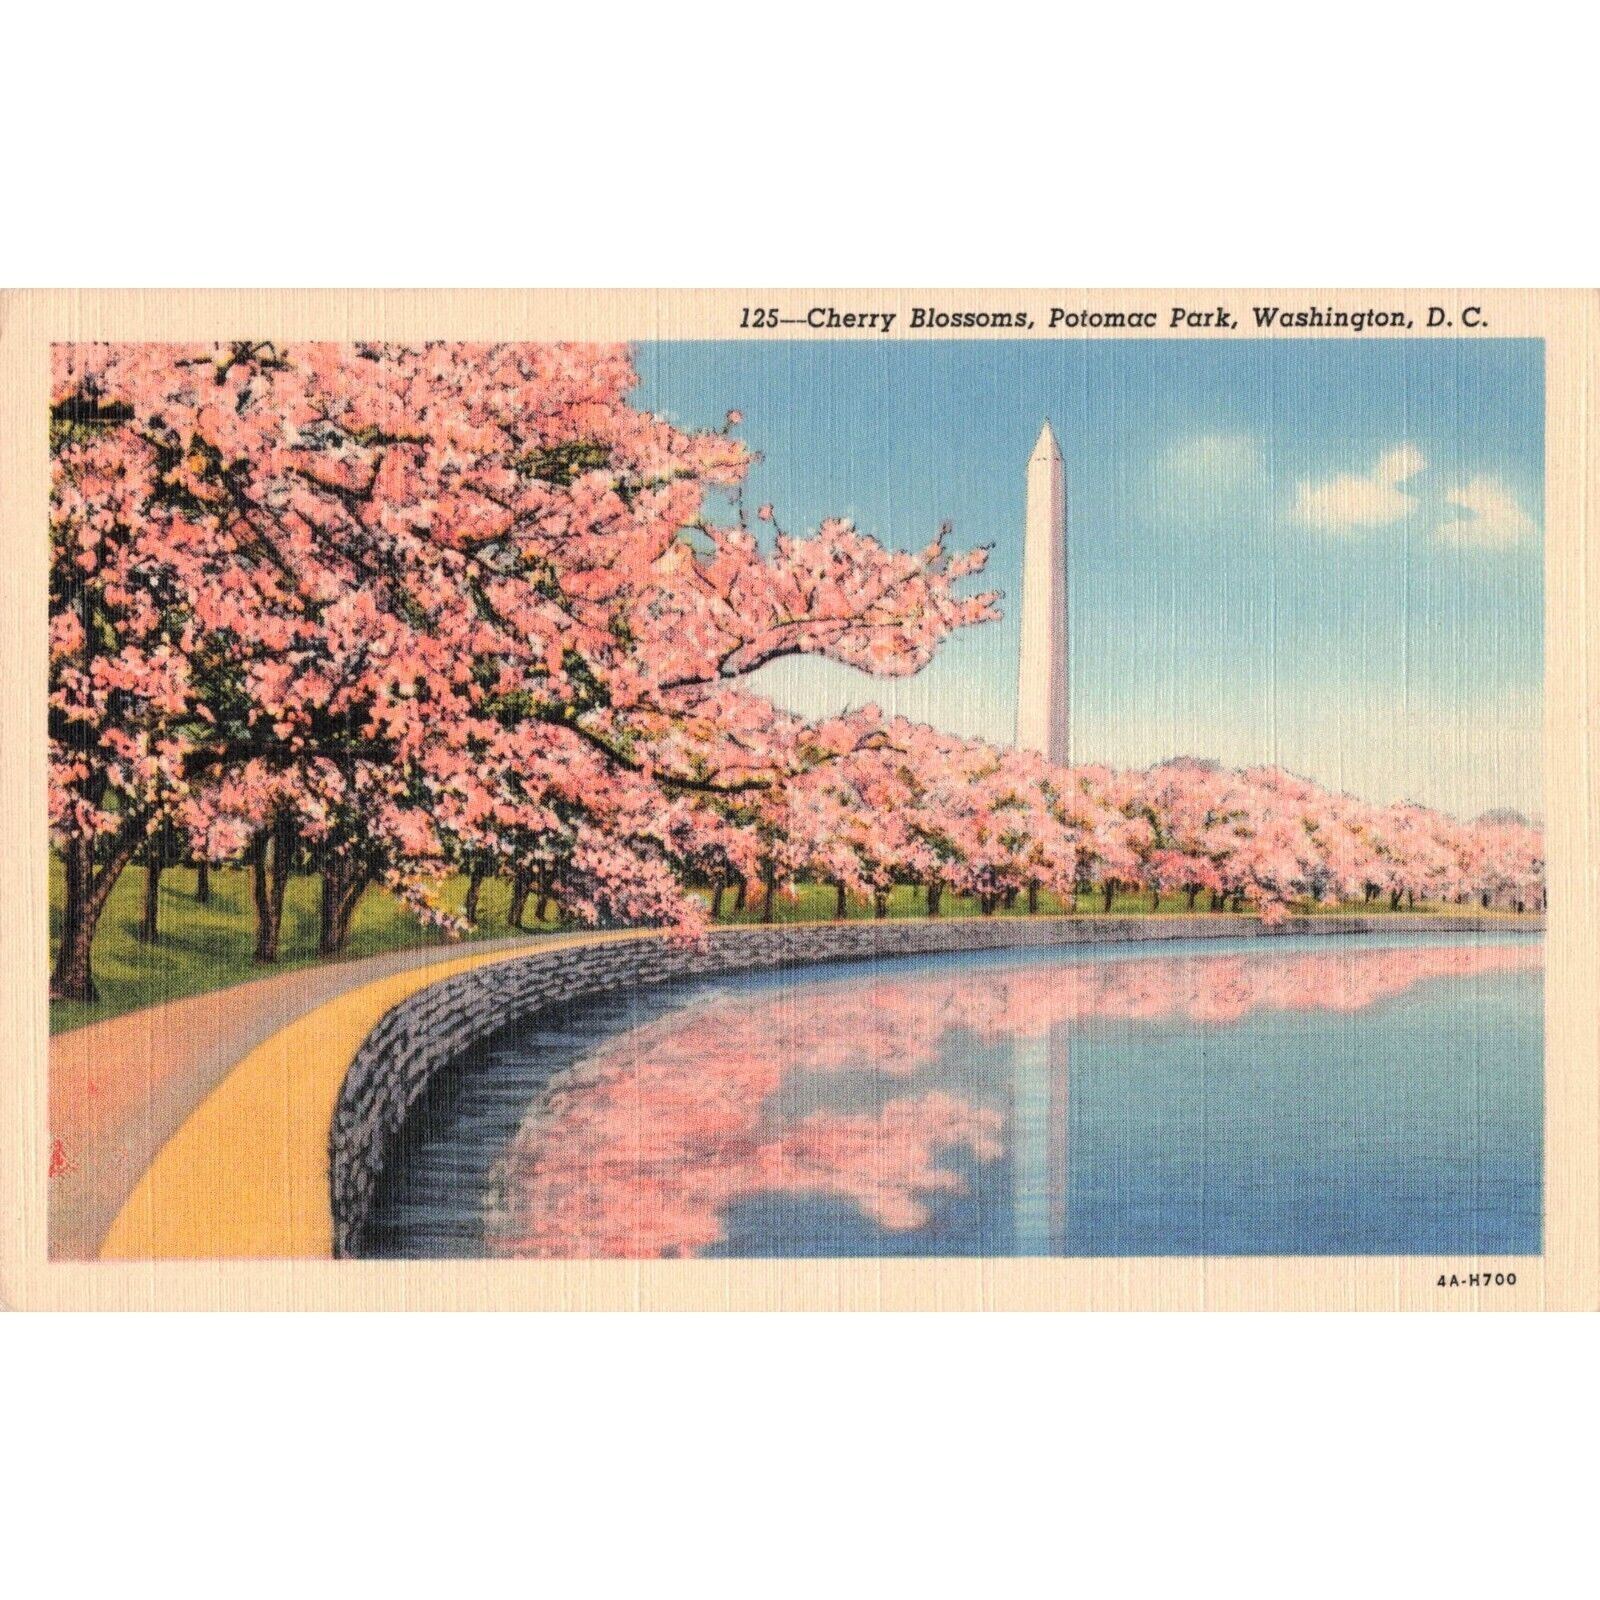 c.1939 Cherry Blossoms Potomac Park Washington D.C. Postcard / 2R4-668